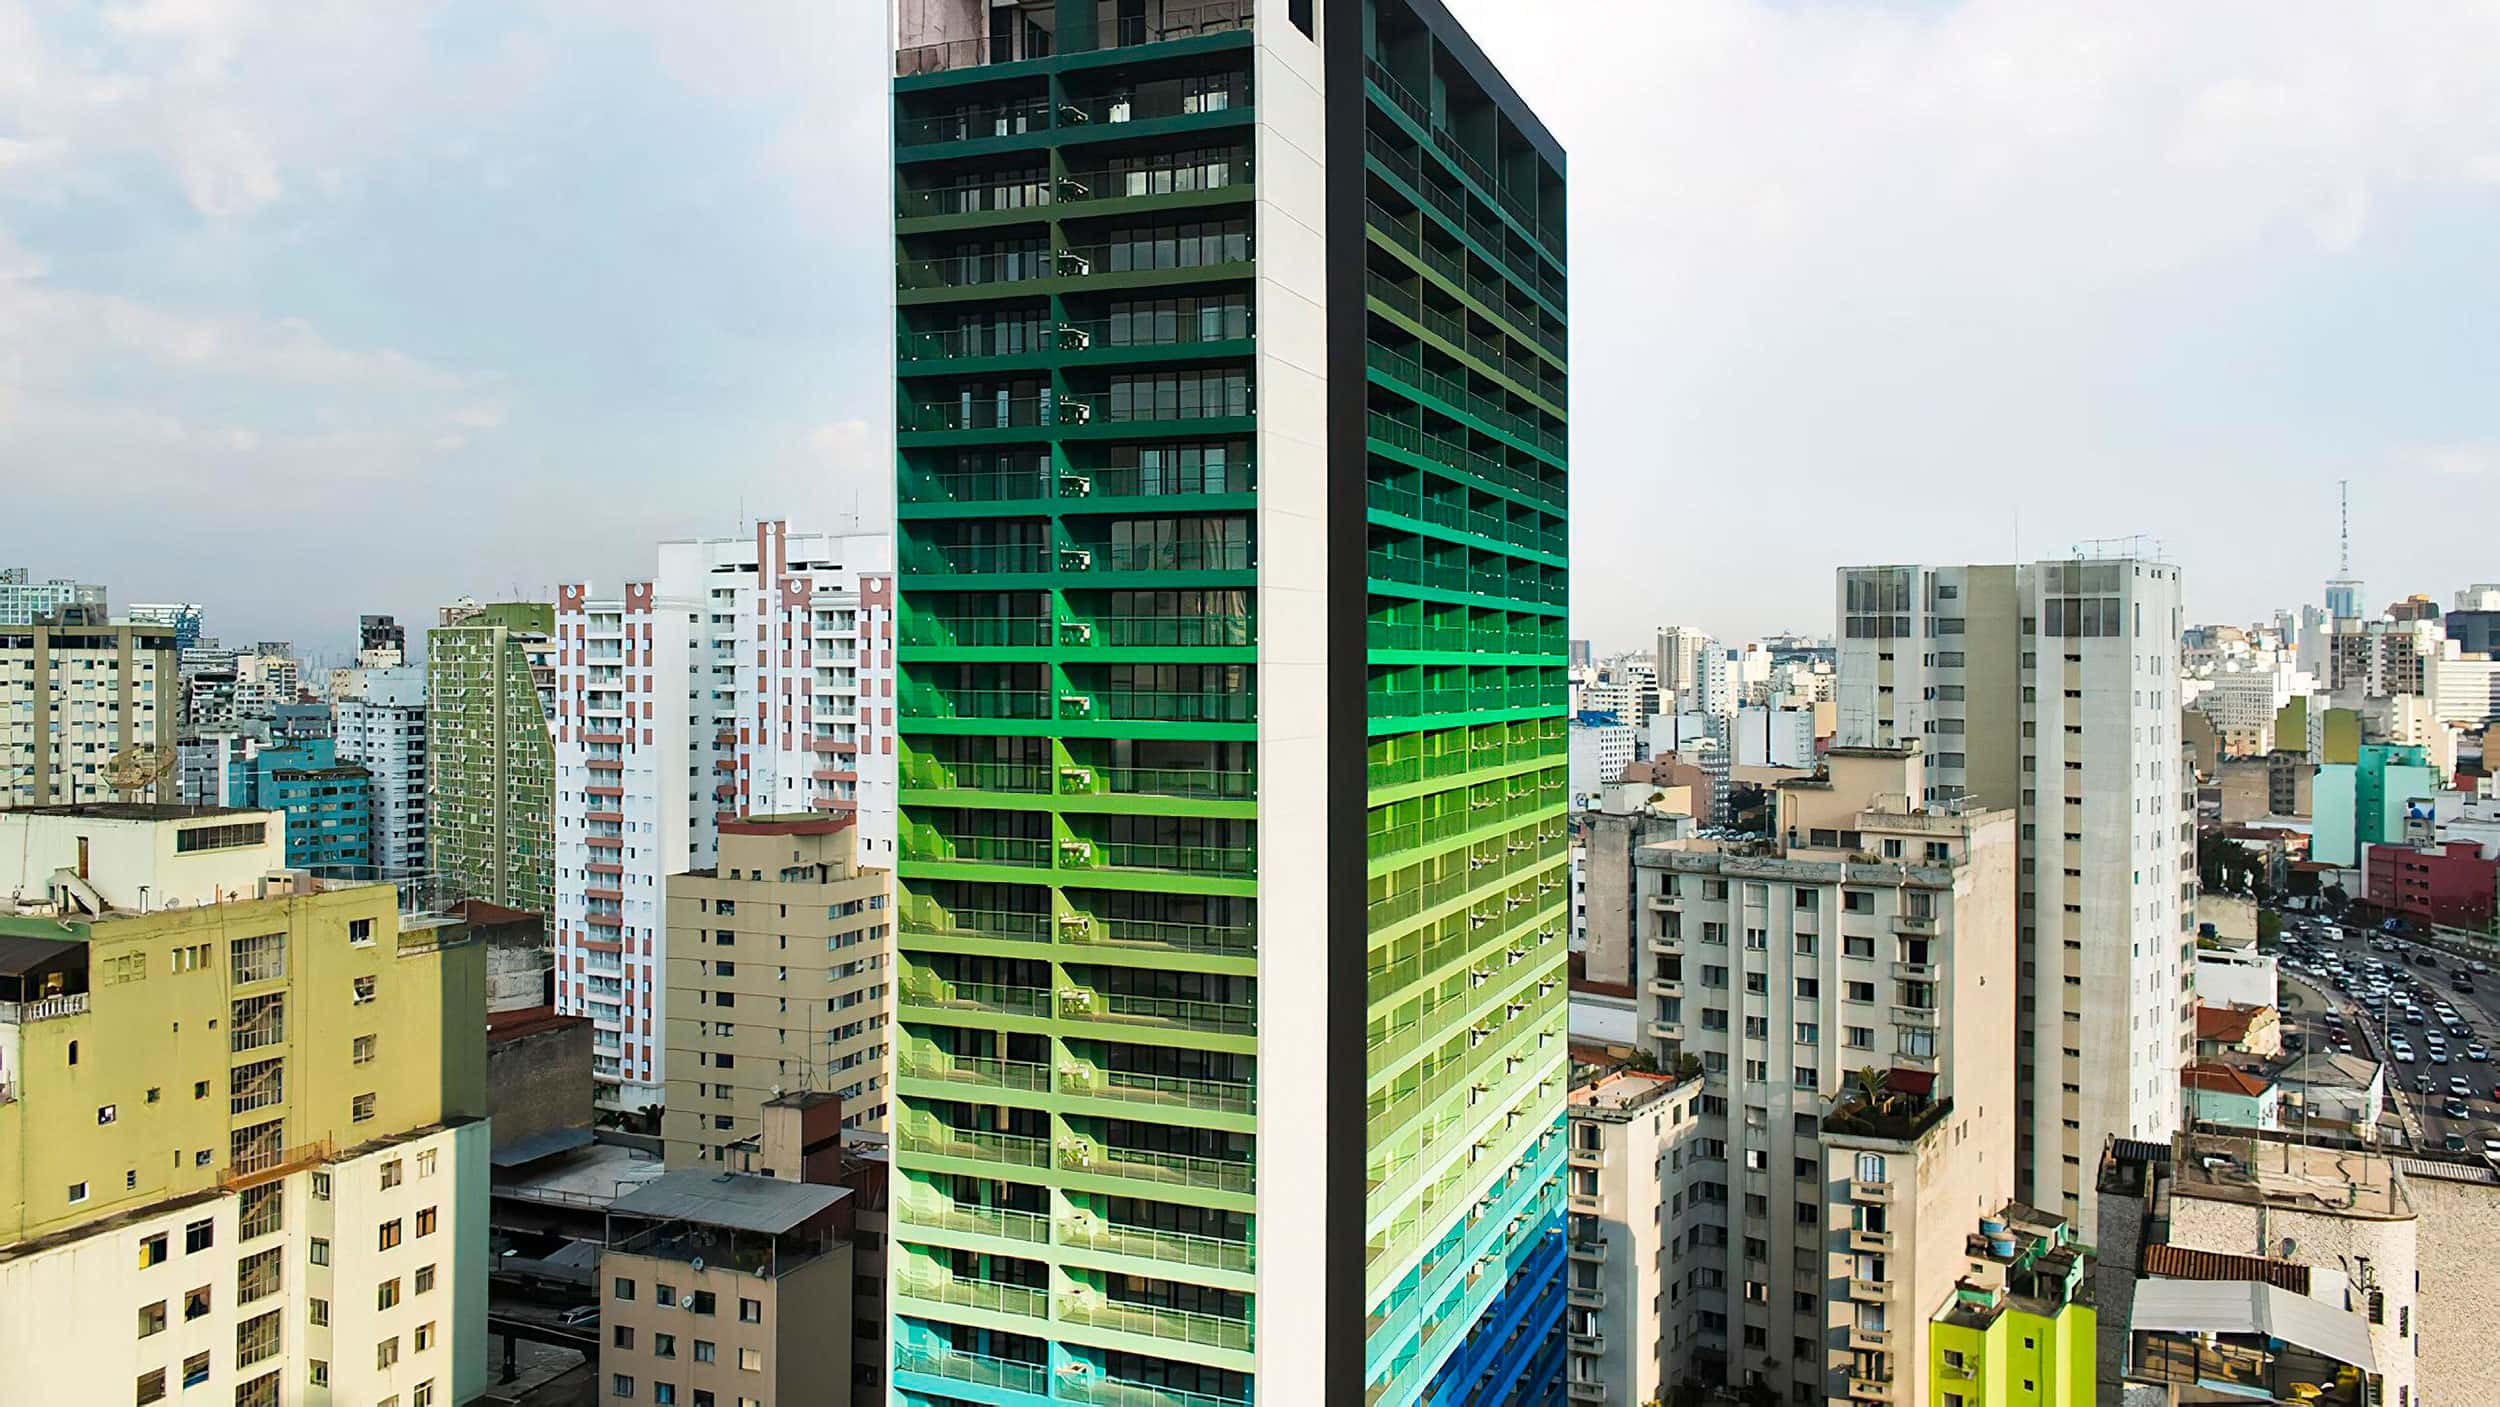 Edifício Brasil, projeto de arquitetura do escritório Rosenbaum em coautoria com Guto Requena